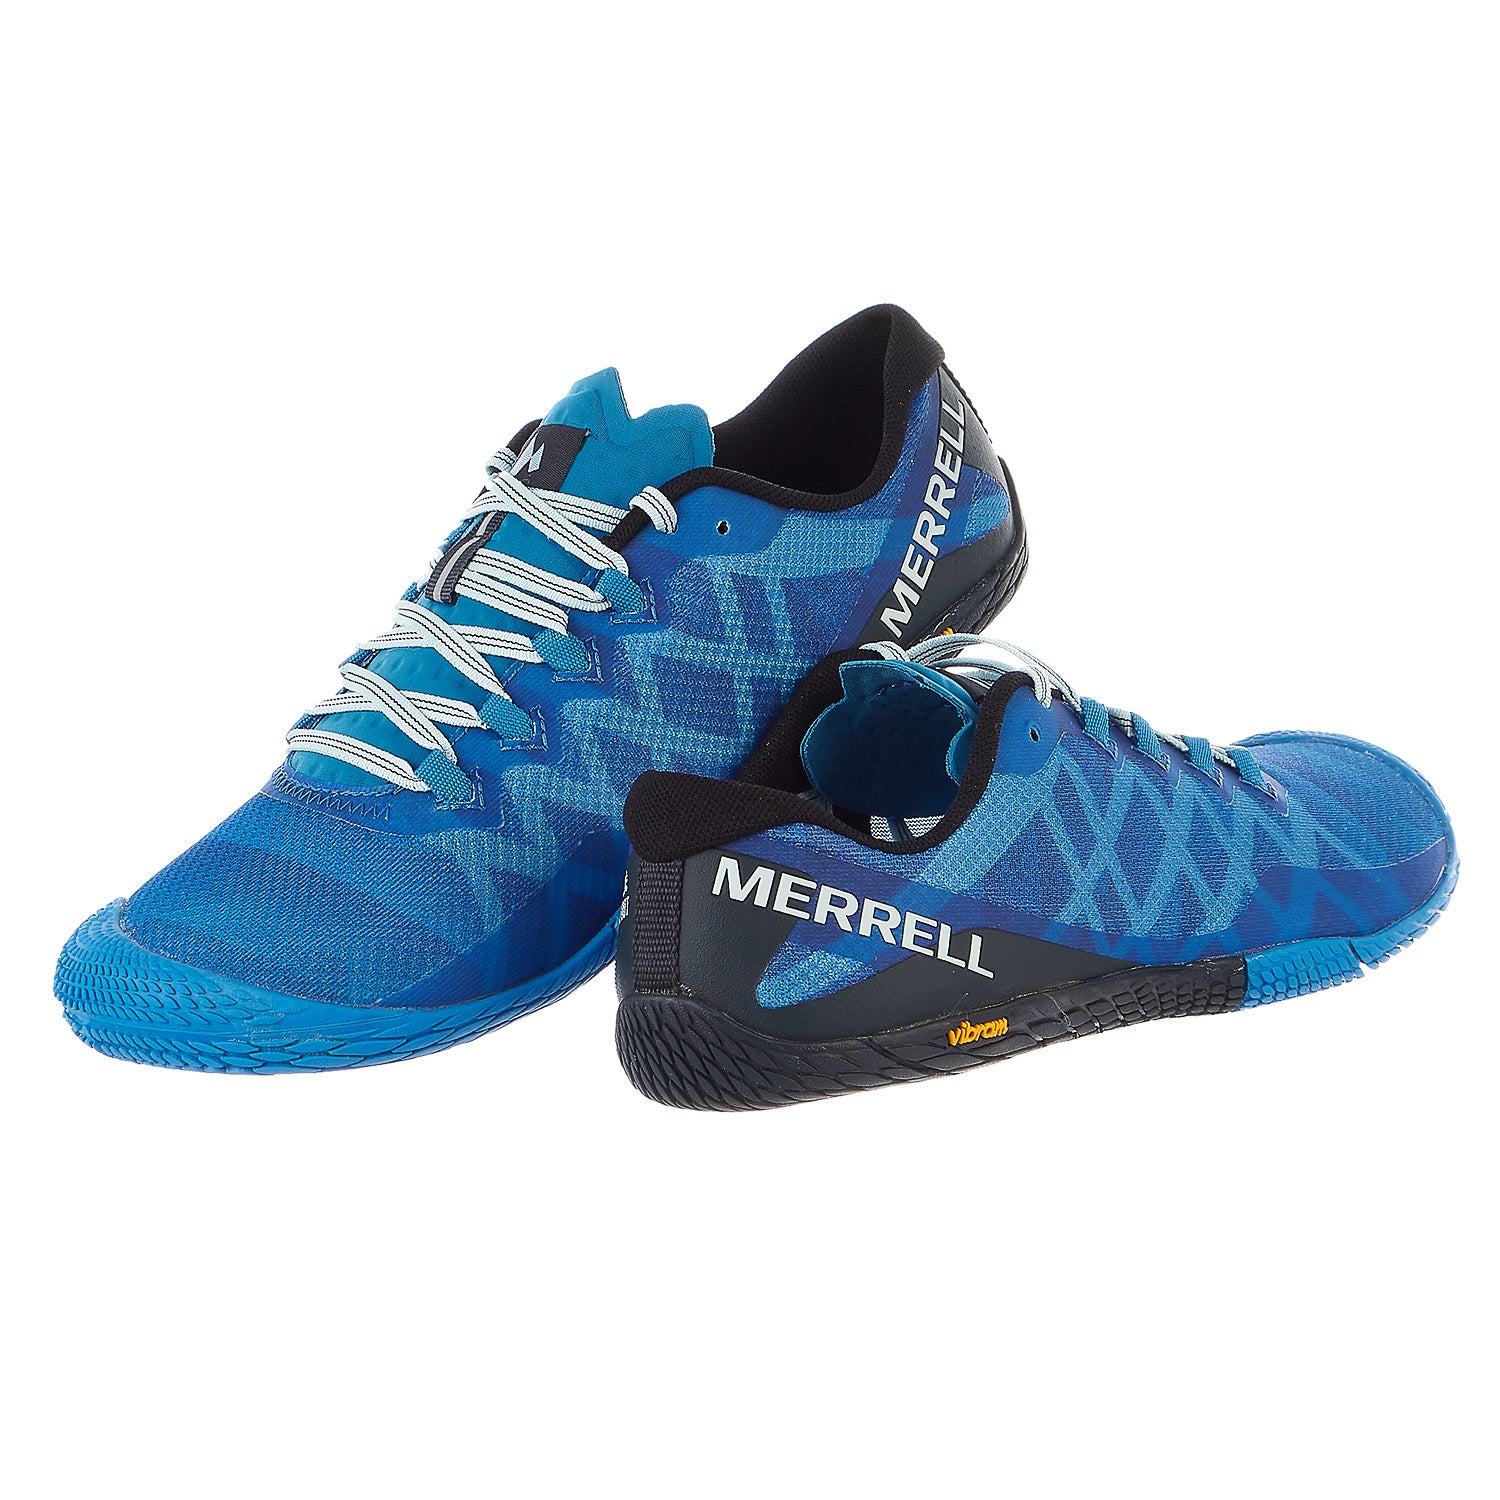 Merrell Vapor Glove Trail Runner - Men's - Shoplifestyle